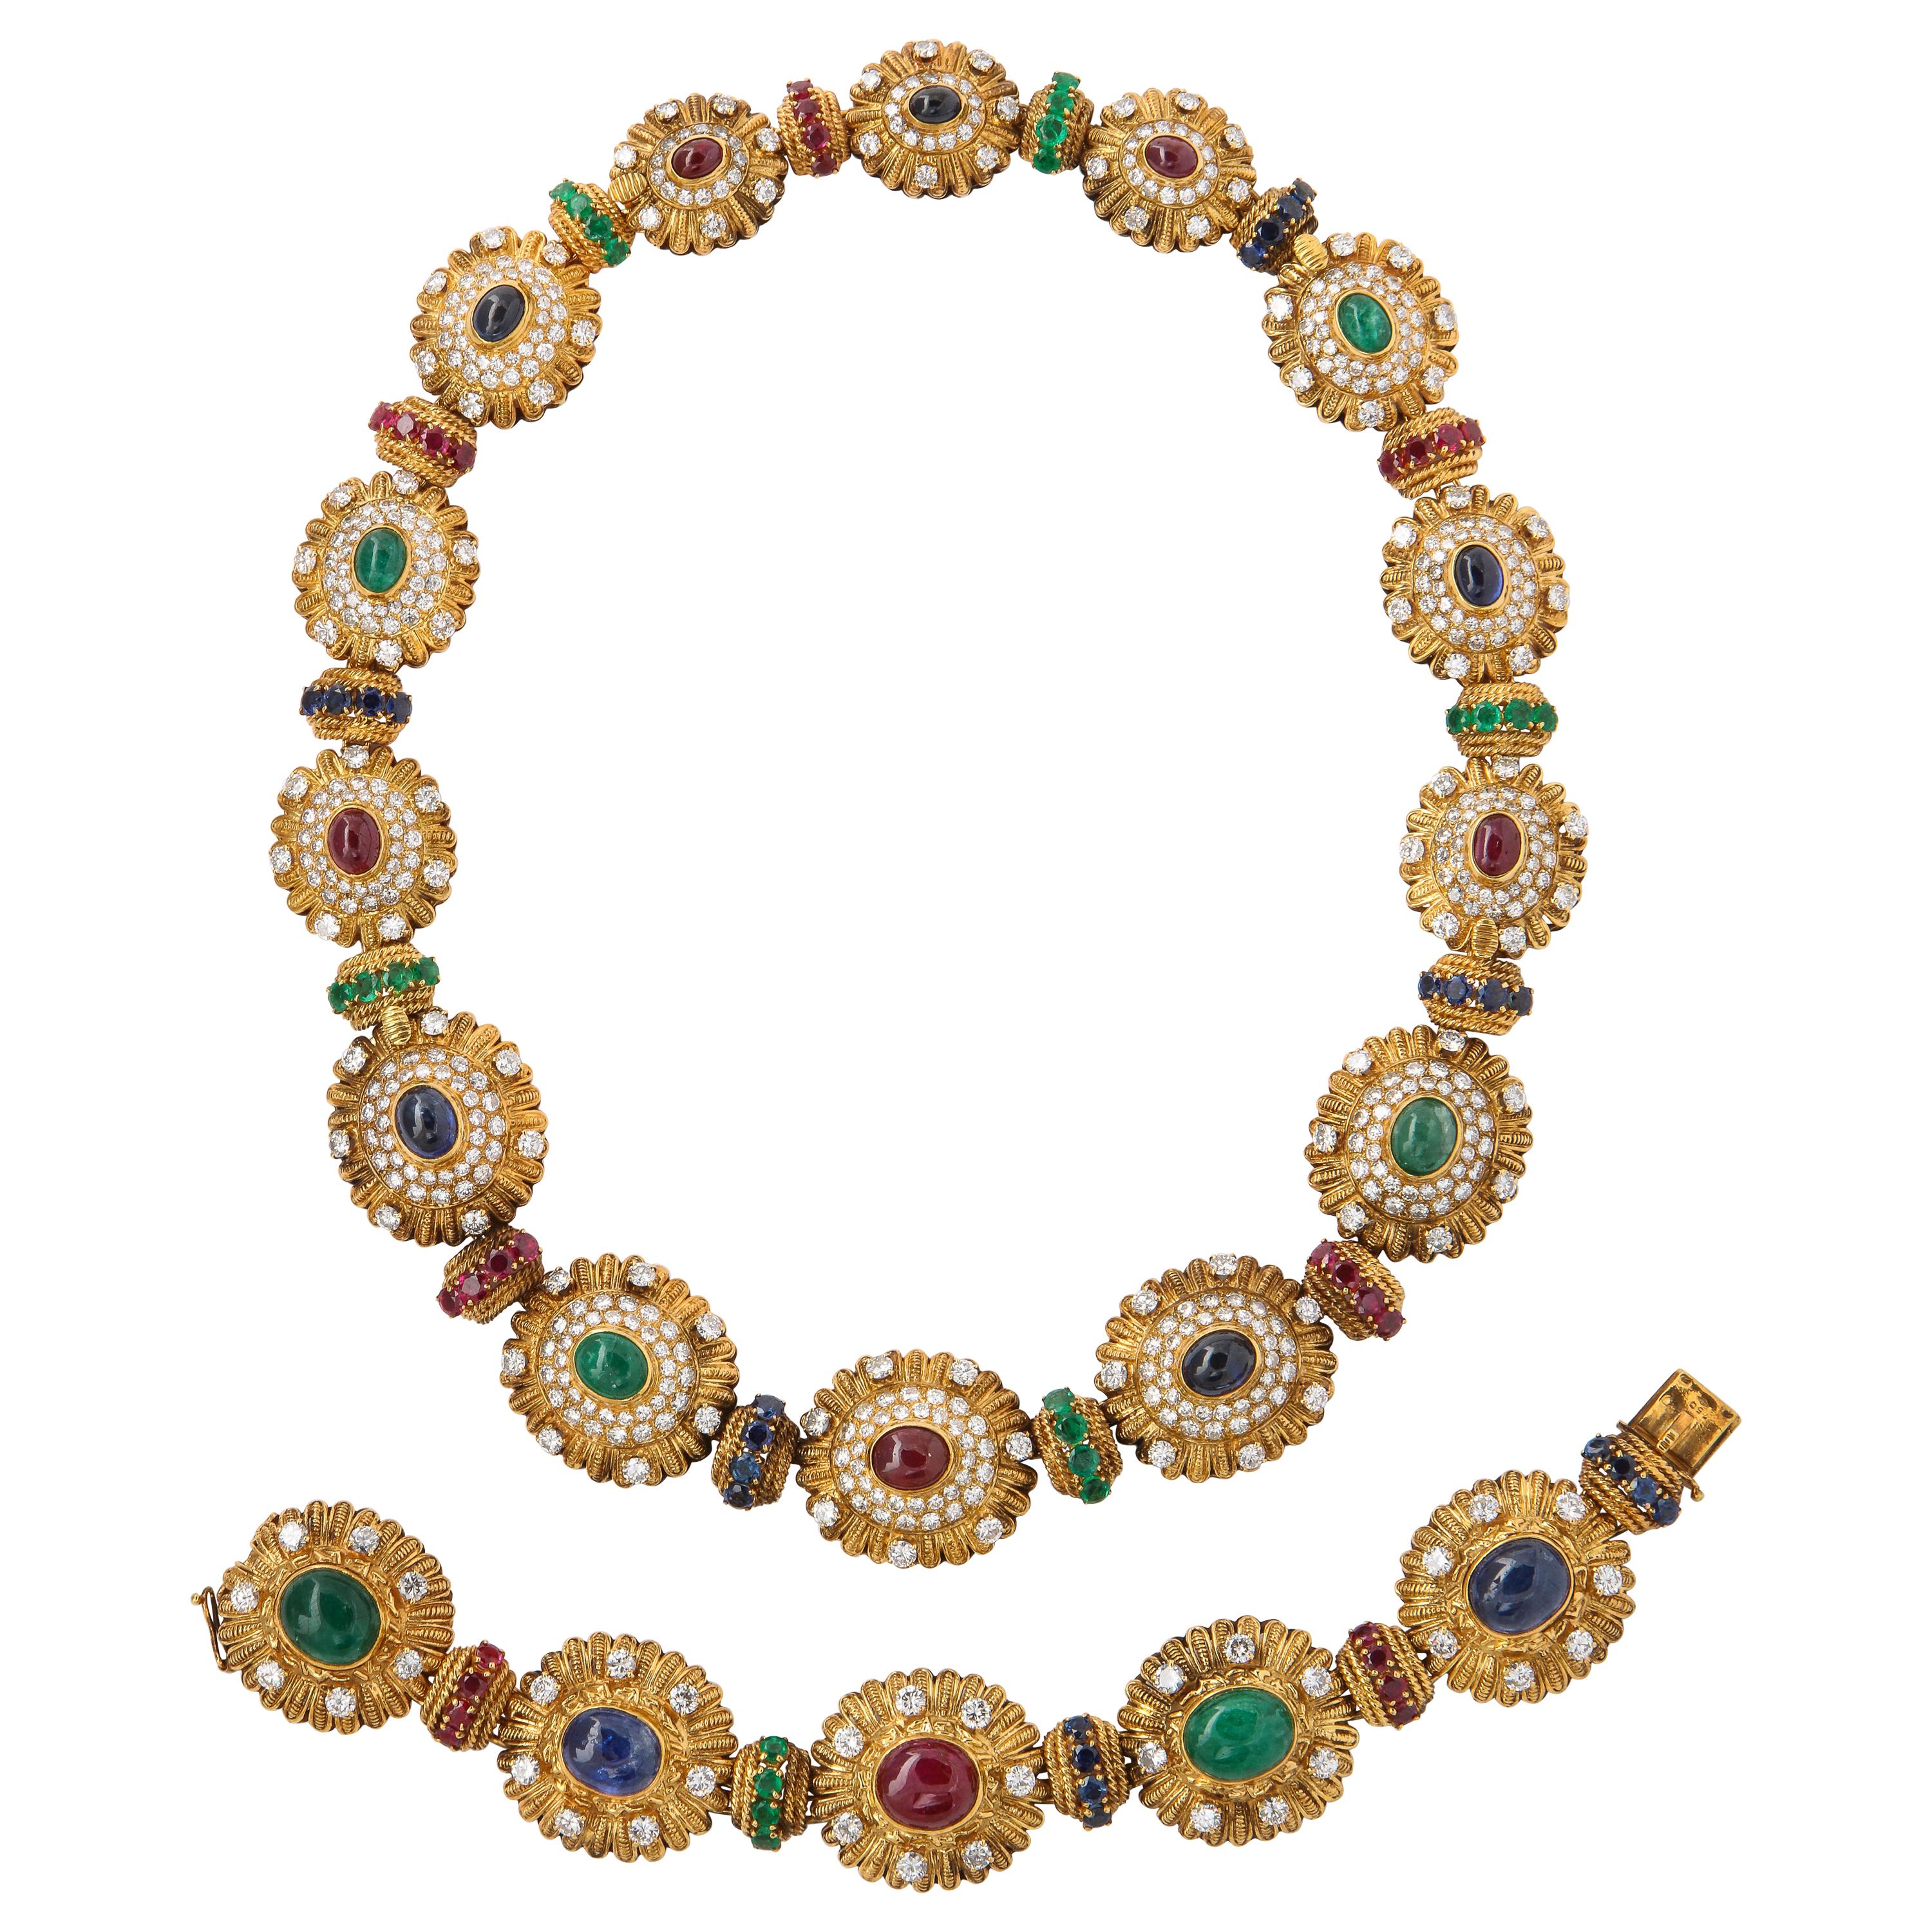 Royal Multi Gem Necklace and Bracelet Set Made by Van Cleef & Arpels